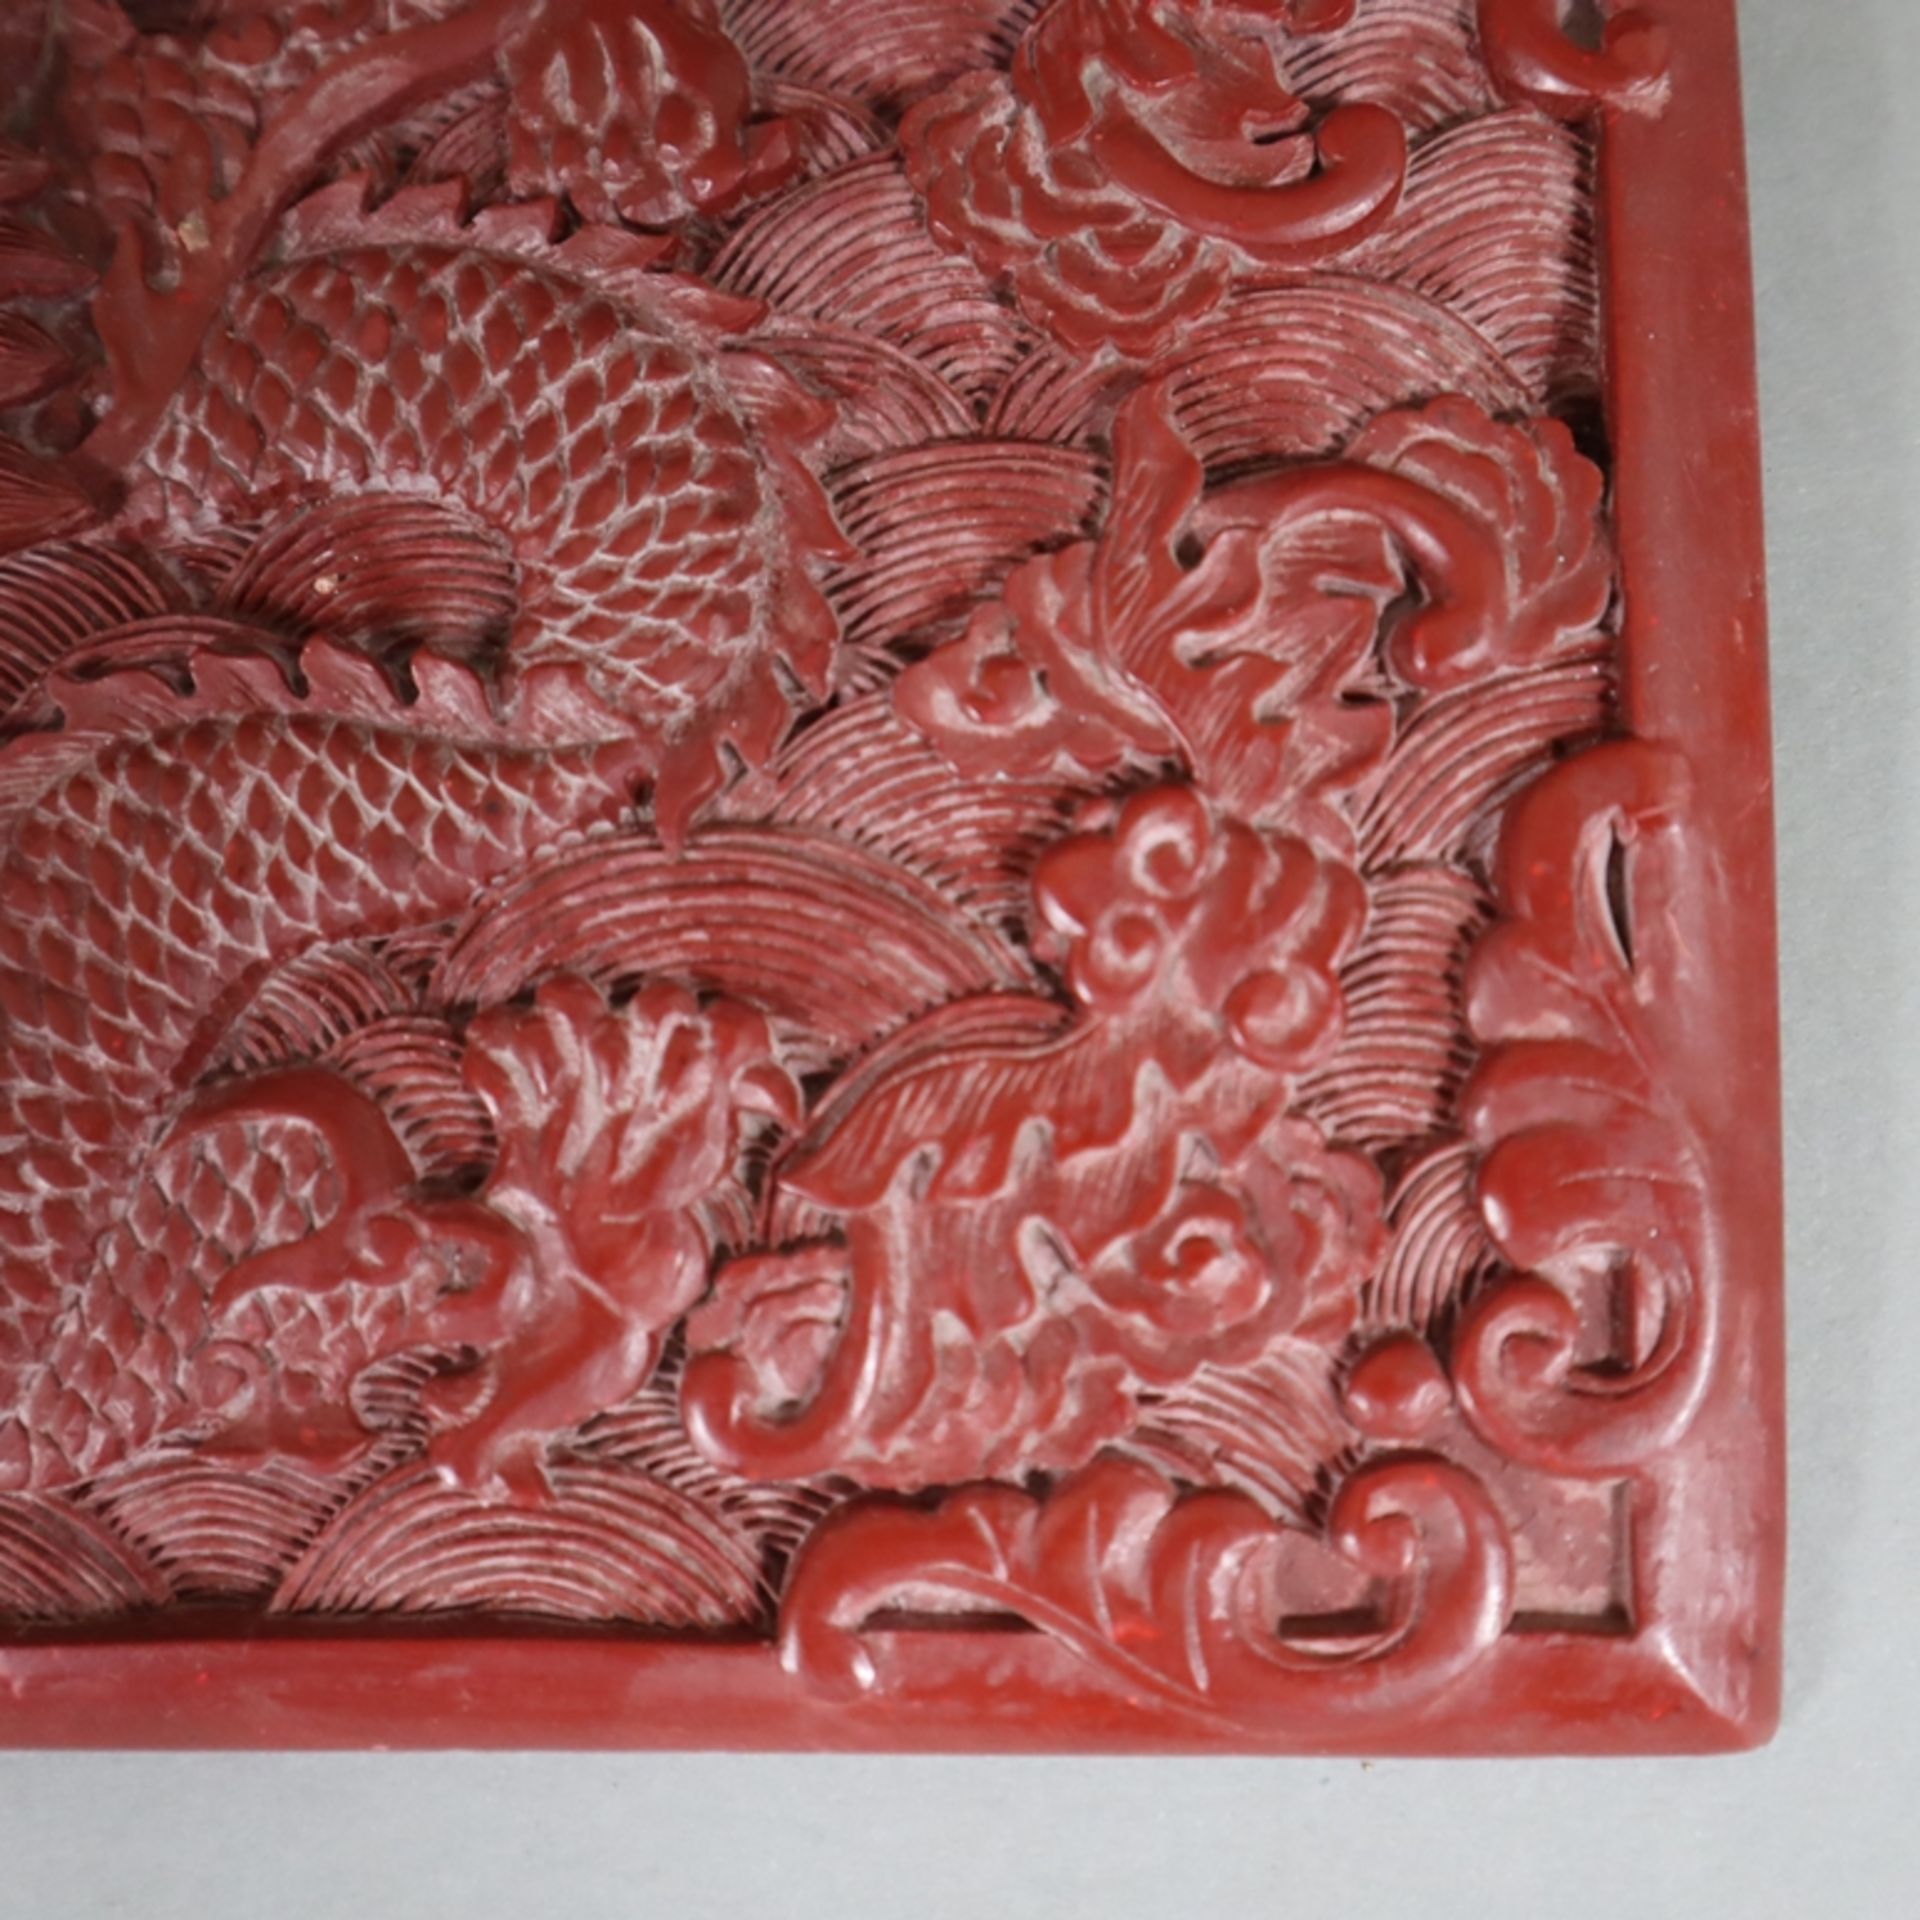 Große Lackplakette - China, roter Lack, rechteckig, in Reliefarbeit gewundener fünfklauiger Drache - Image 4 of 6